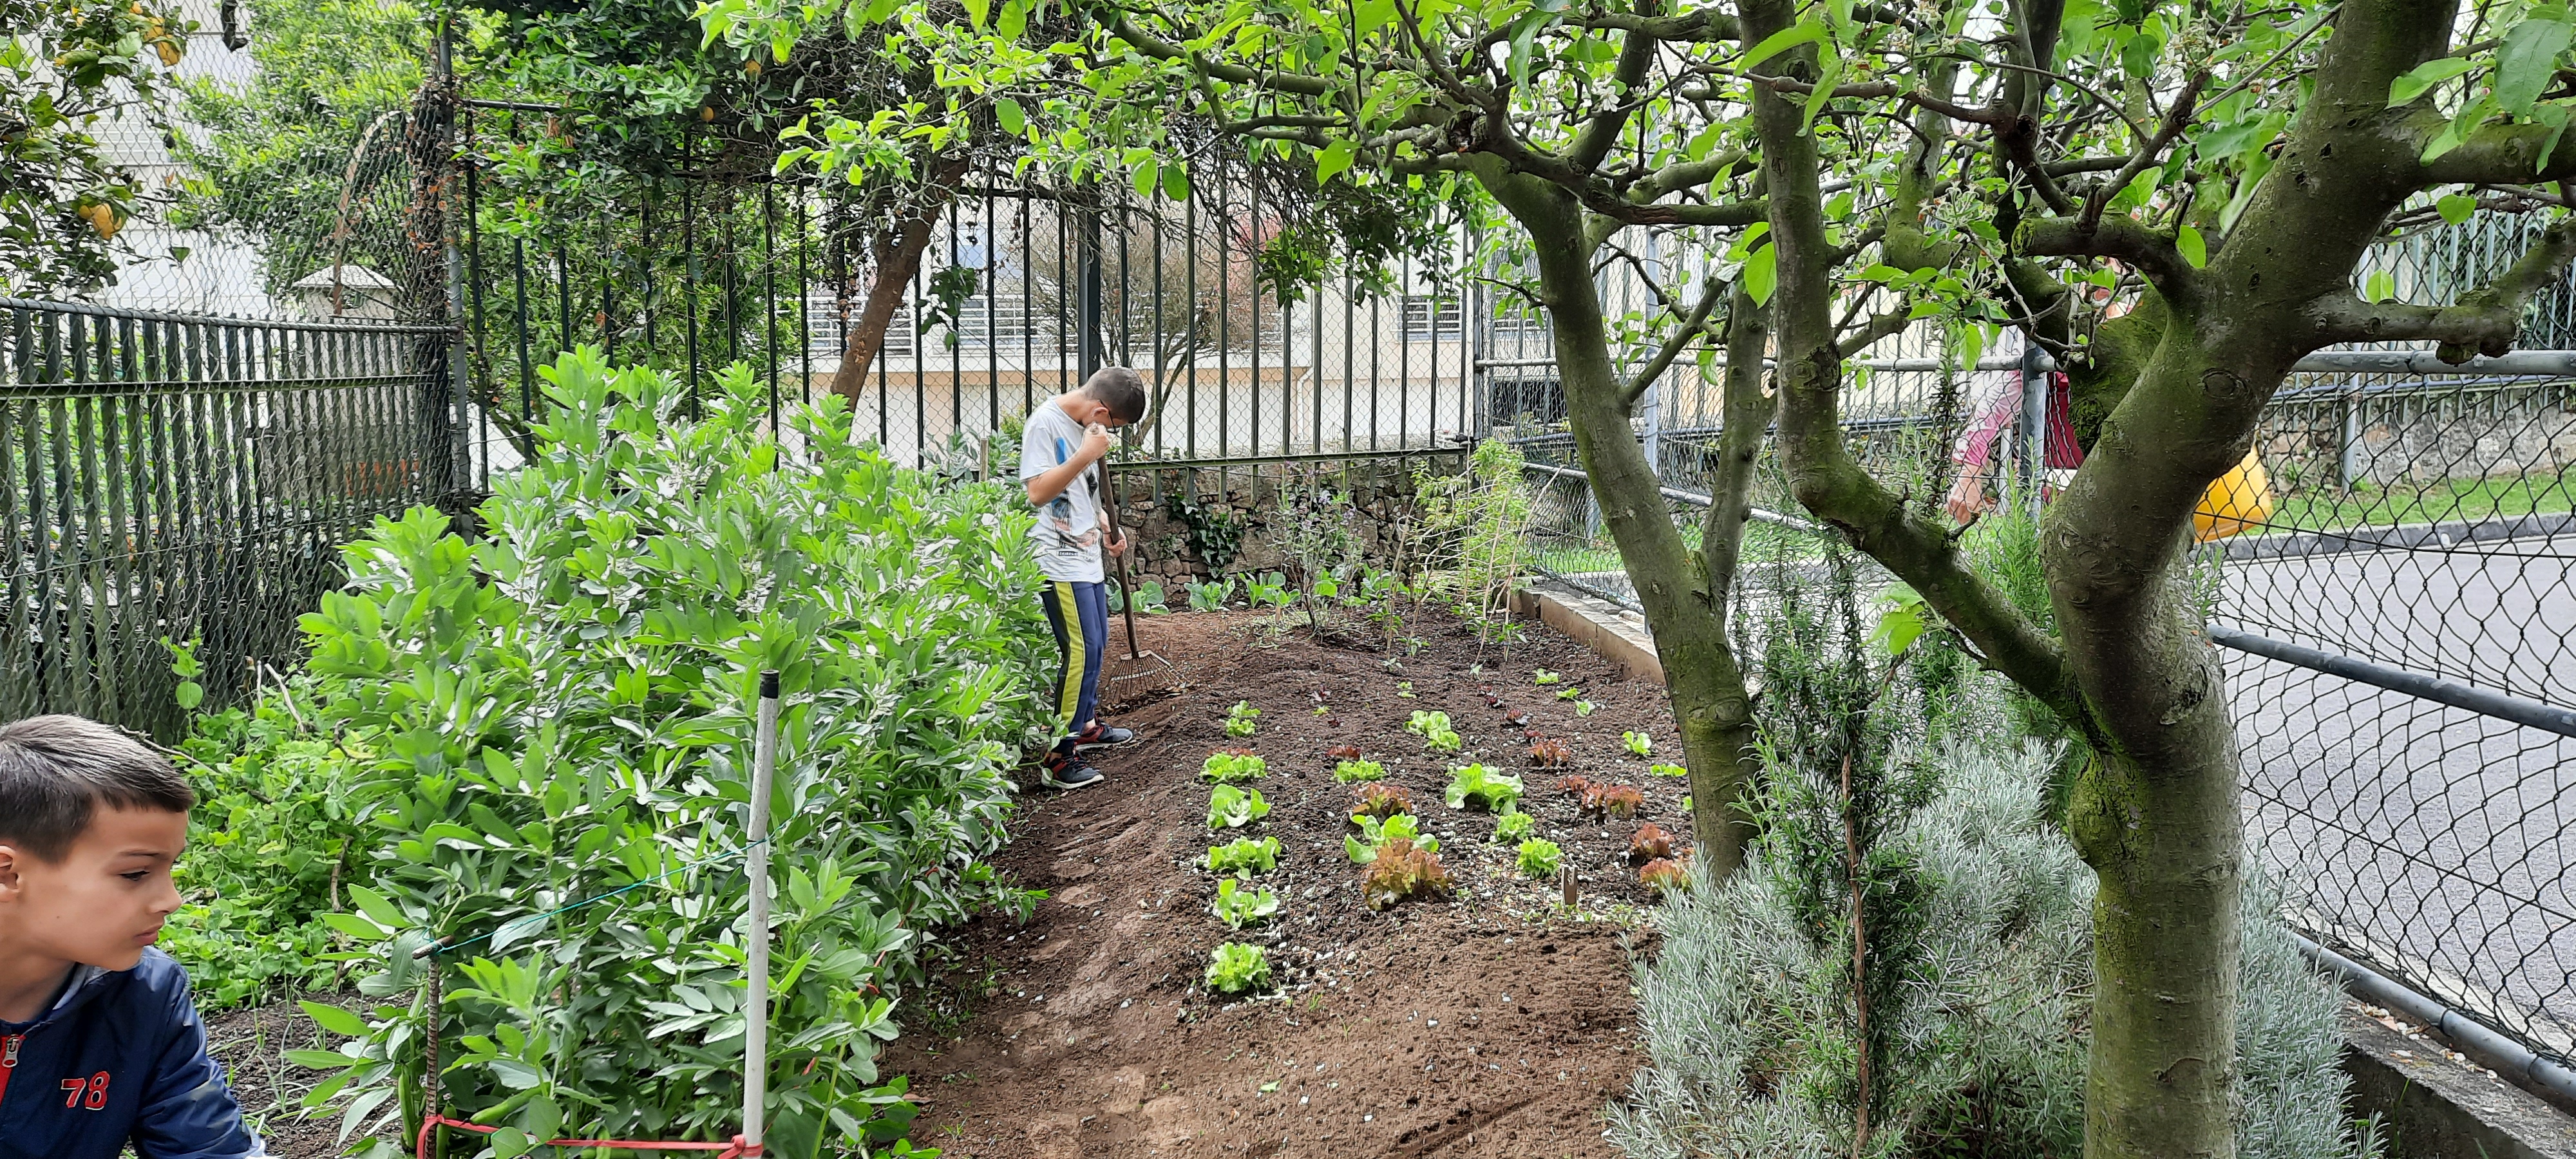 horta constitui uma ferramenta pedagógica que possibilita discussões sobre meio ambiente, qualidade de vida, aquisição de hábitos alimentares saudáveis